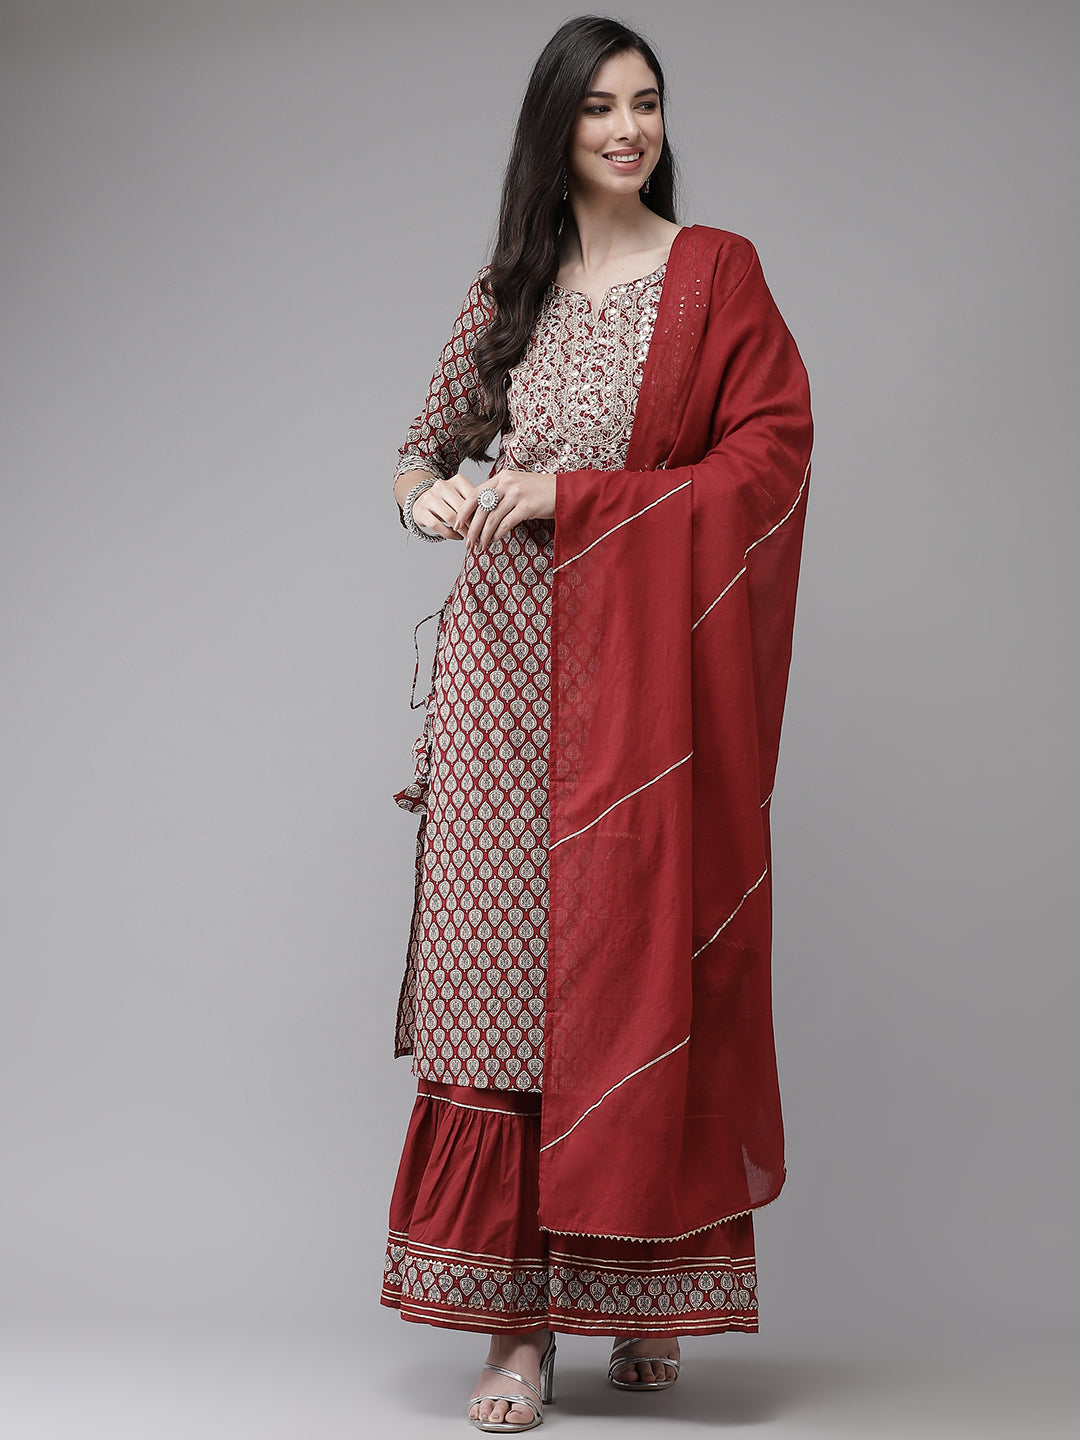 Women's Cotton Blend Brown Embroidered A-Line Kurta Sharara Dupatta Set - Navyaa